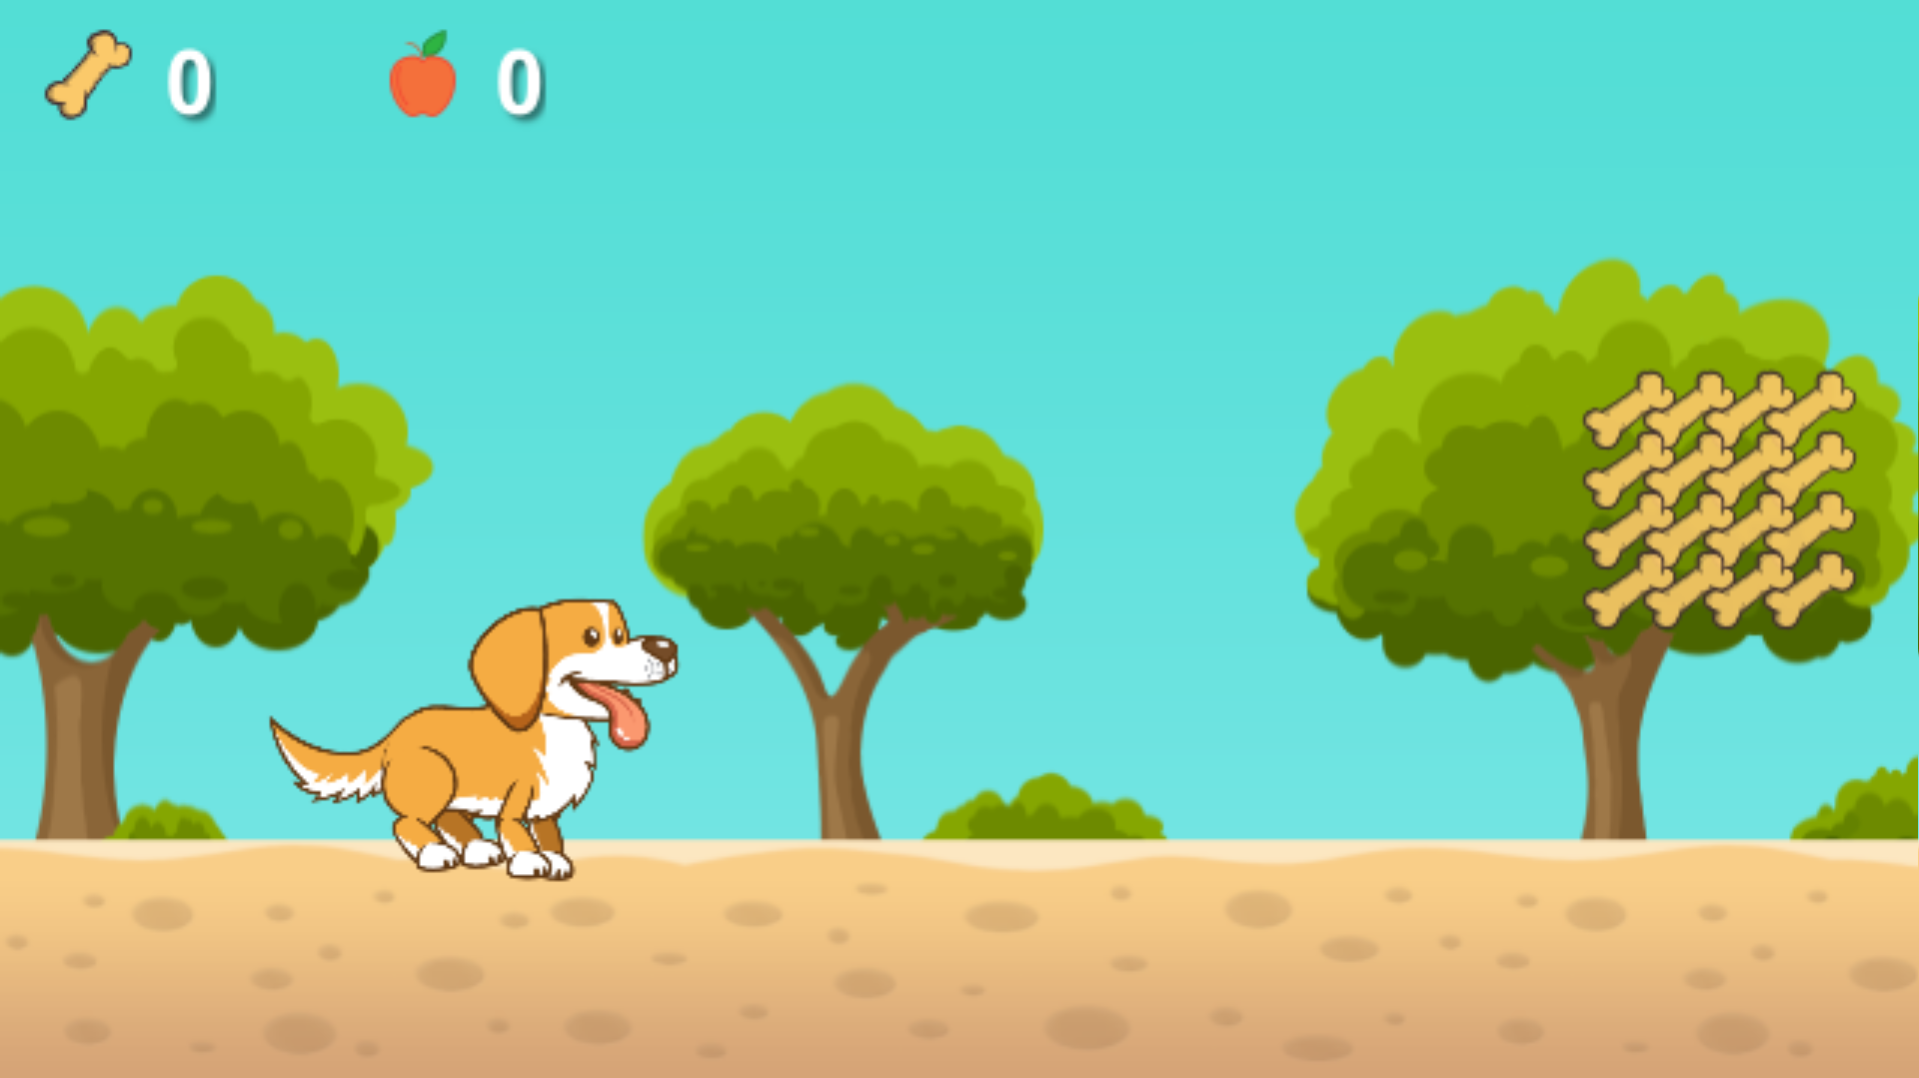 Corre, cão! Meu primeiro jogo Android para crianças